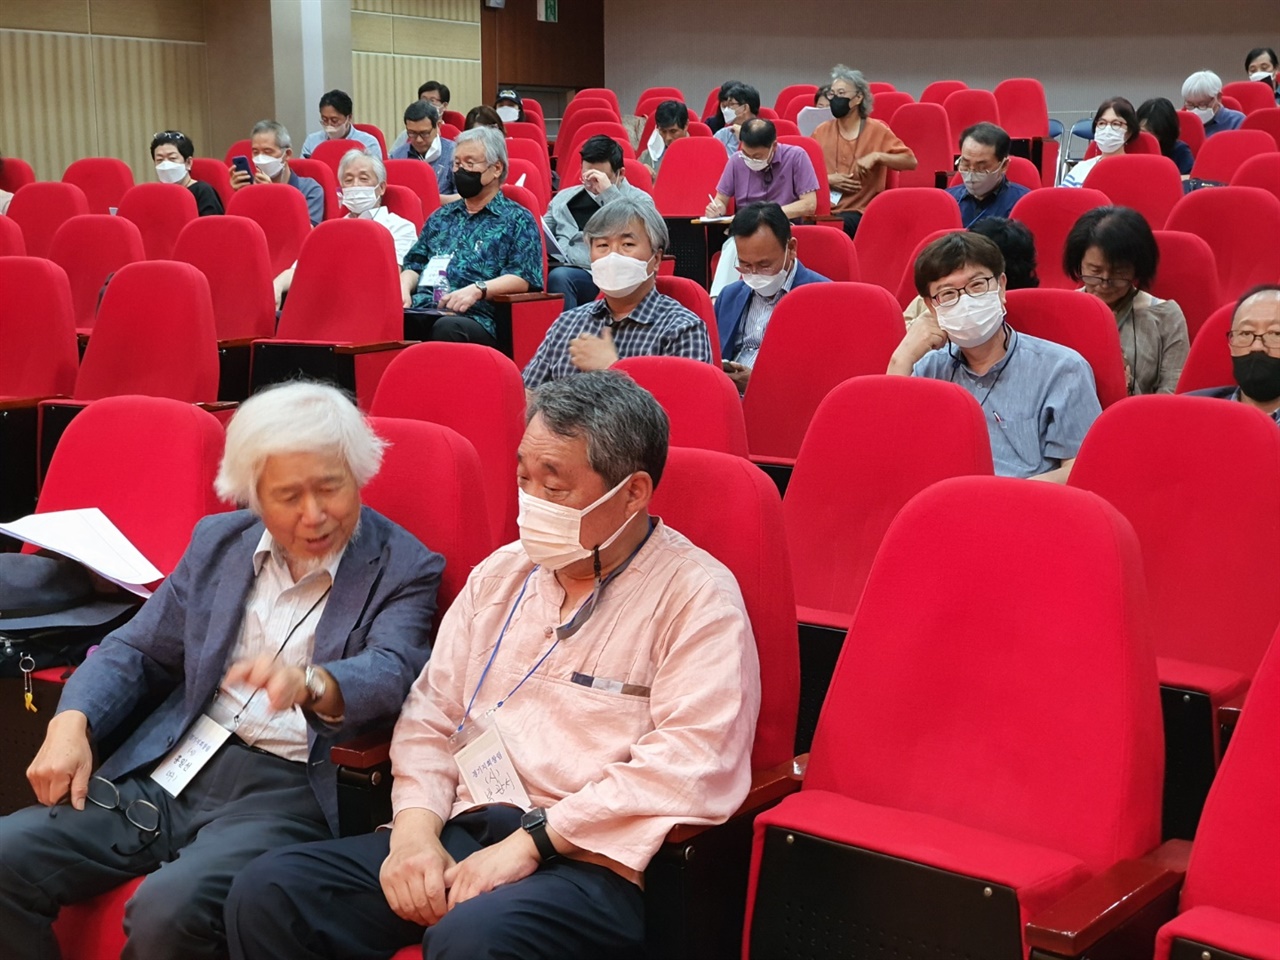 경기문화재단 다산홀에는 이날 100명의 작가들이 모여, 한국작가회의 경기지회 창립을 선언했다.